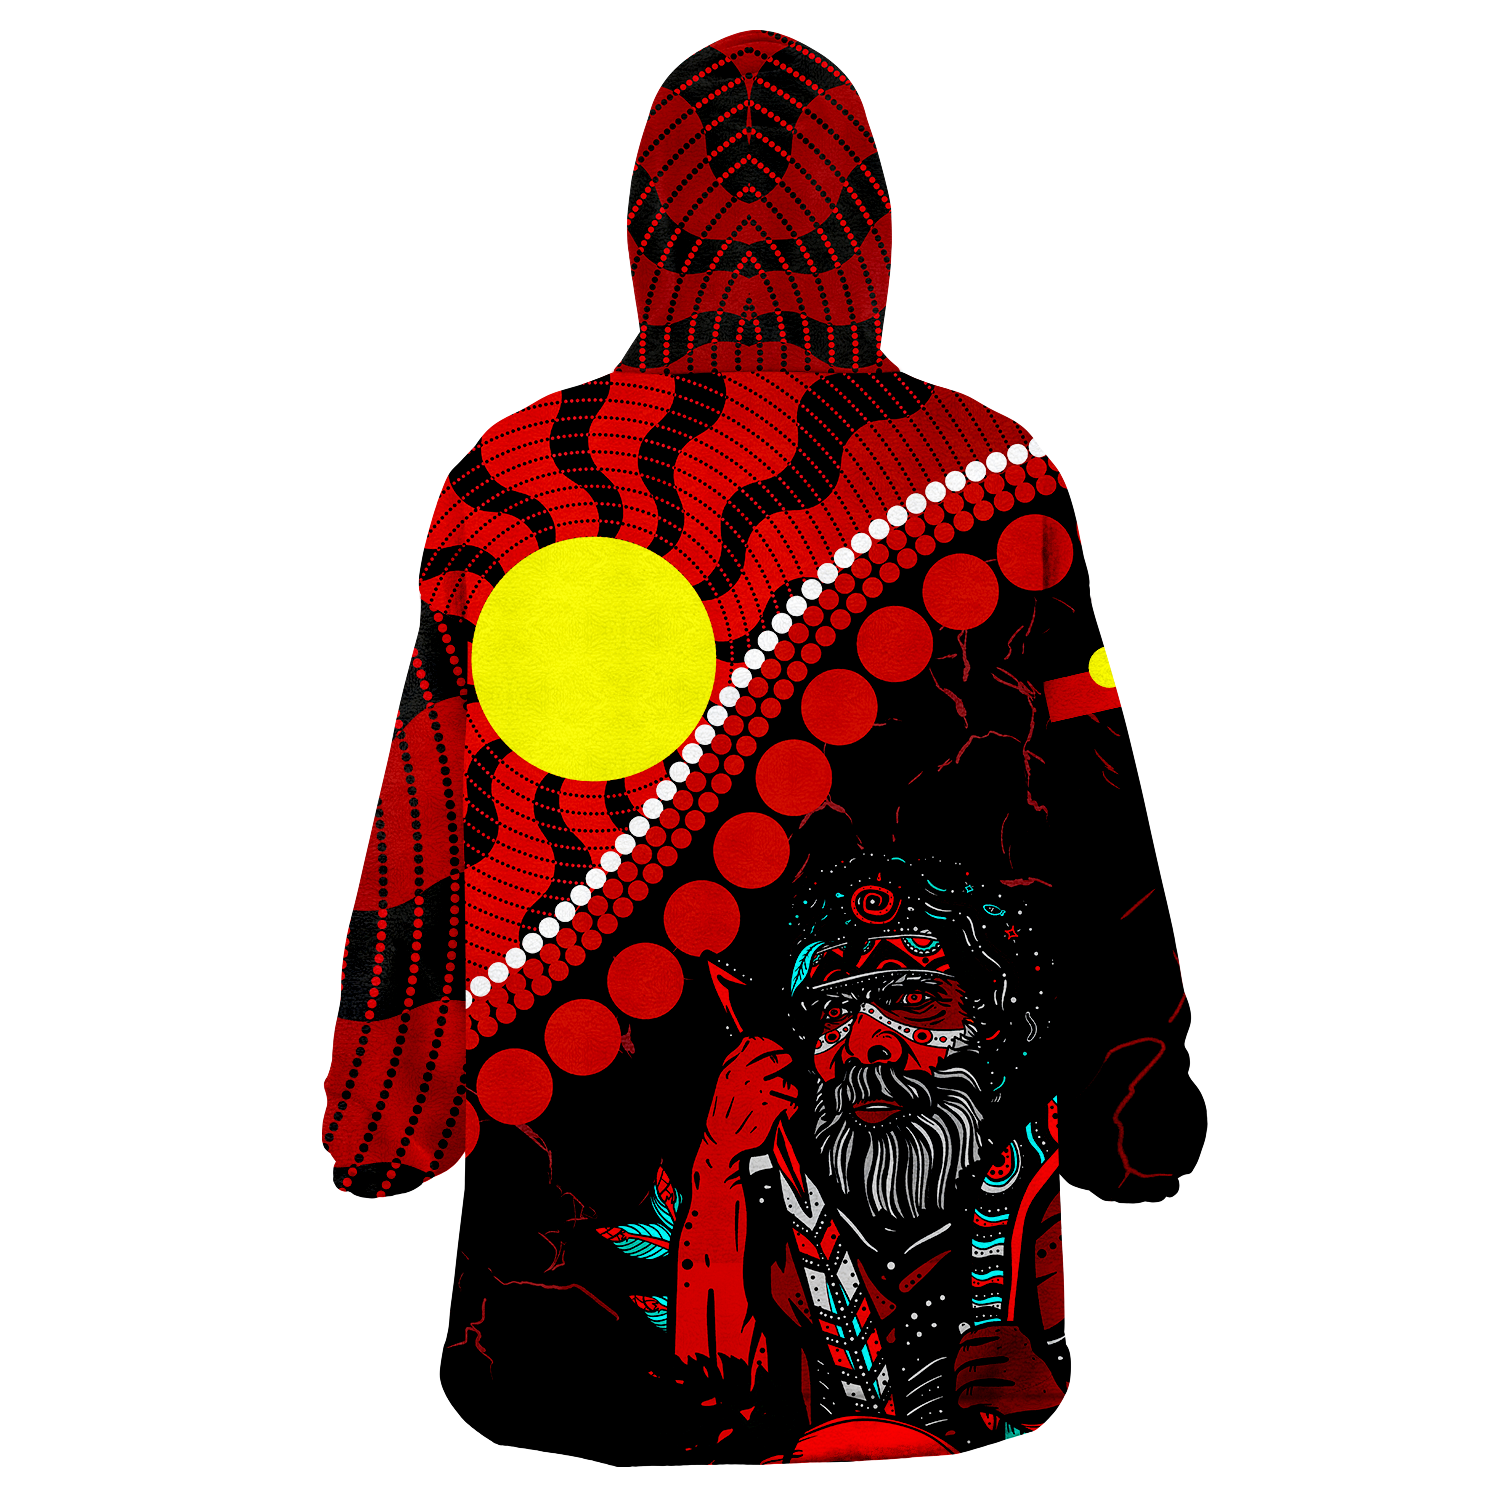 Aboriginal - Indigenous People And Sun Wearable Blanket Hoodie - LT12